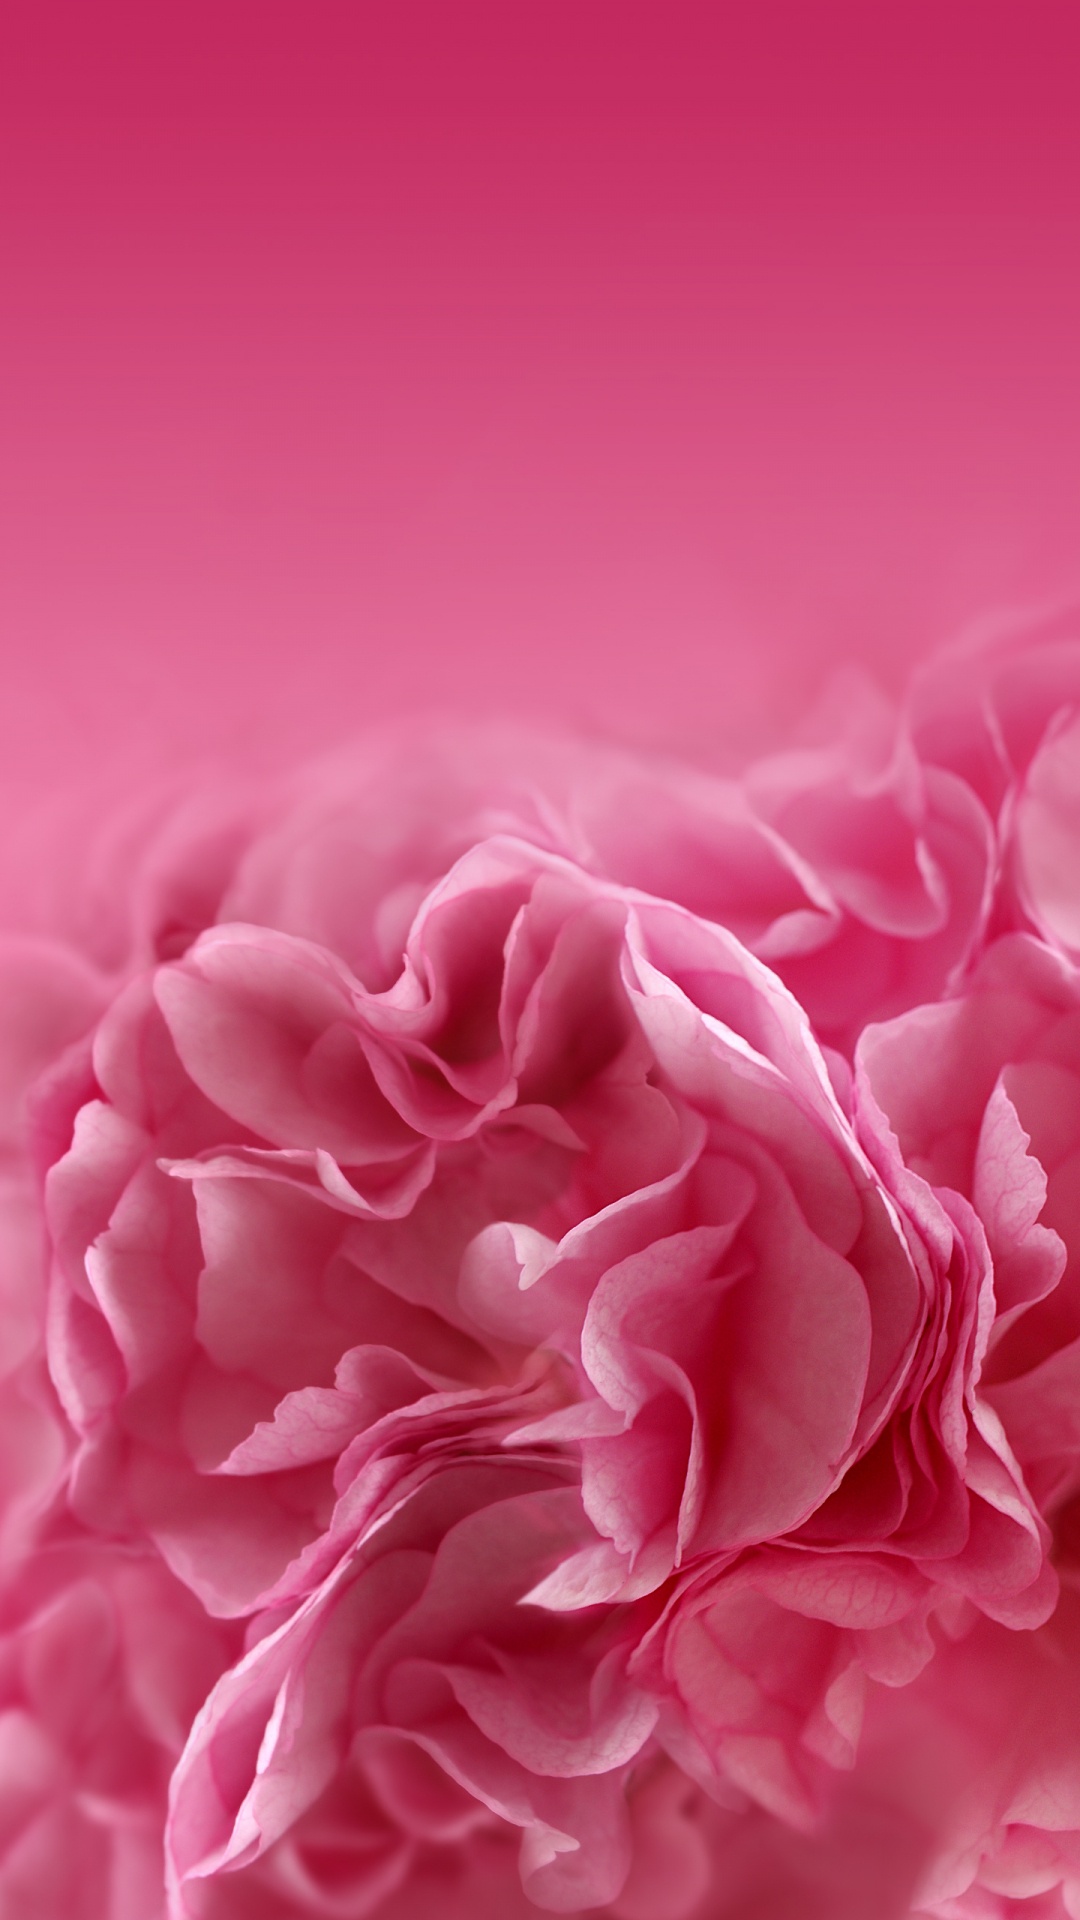 粉红色的花朵, 粉红色, 红色的, 牡丹, 康乃馨 壁纸 1080x1920 允许